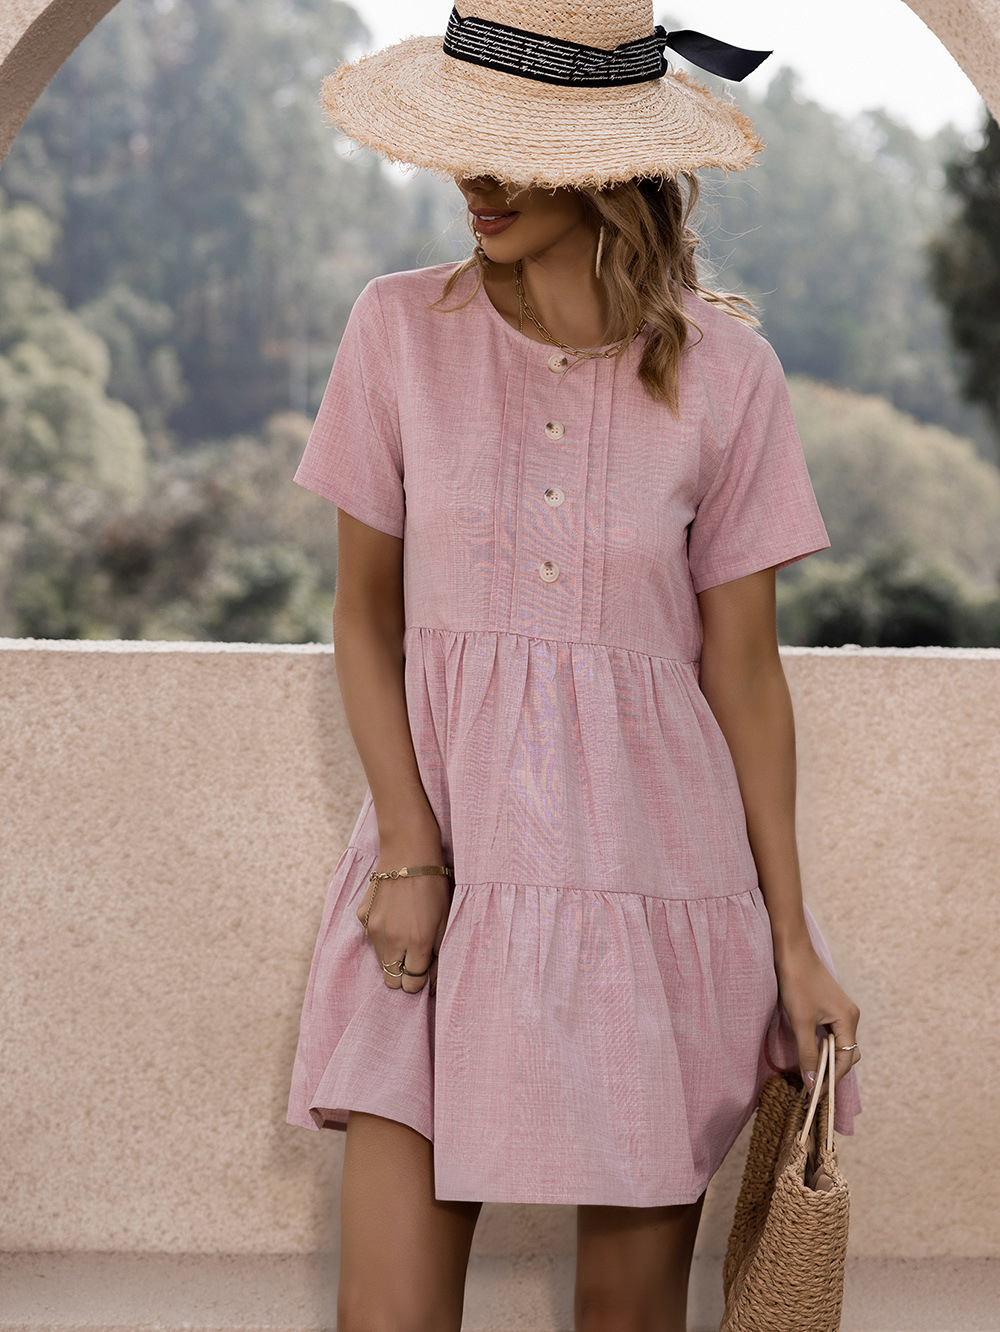 Women's Clothing Dresses | Summer Dress Jewel Neck Pink Short Beach Dress - MX36950